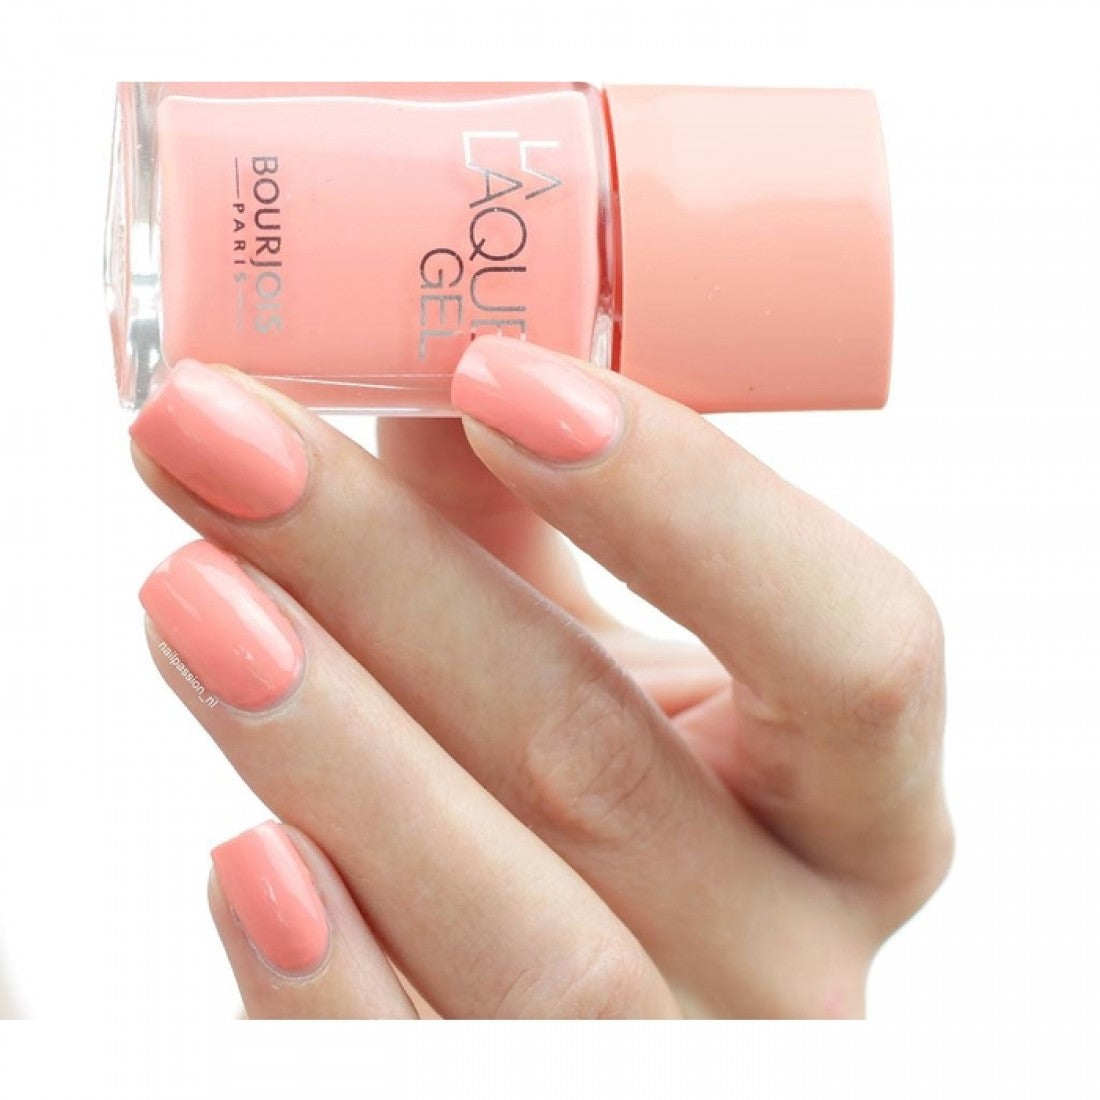 Bourjois La Laque Beauty League Nail Pocket polish The – Pink - 14 Gel Pakistan